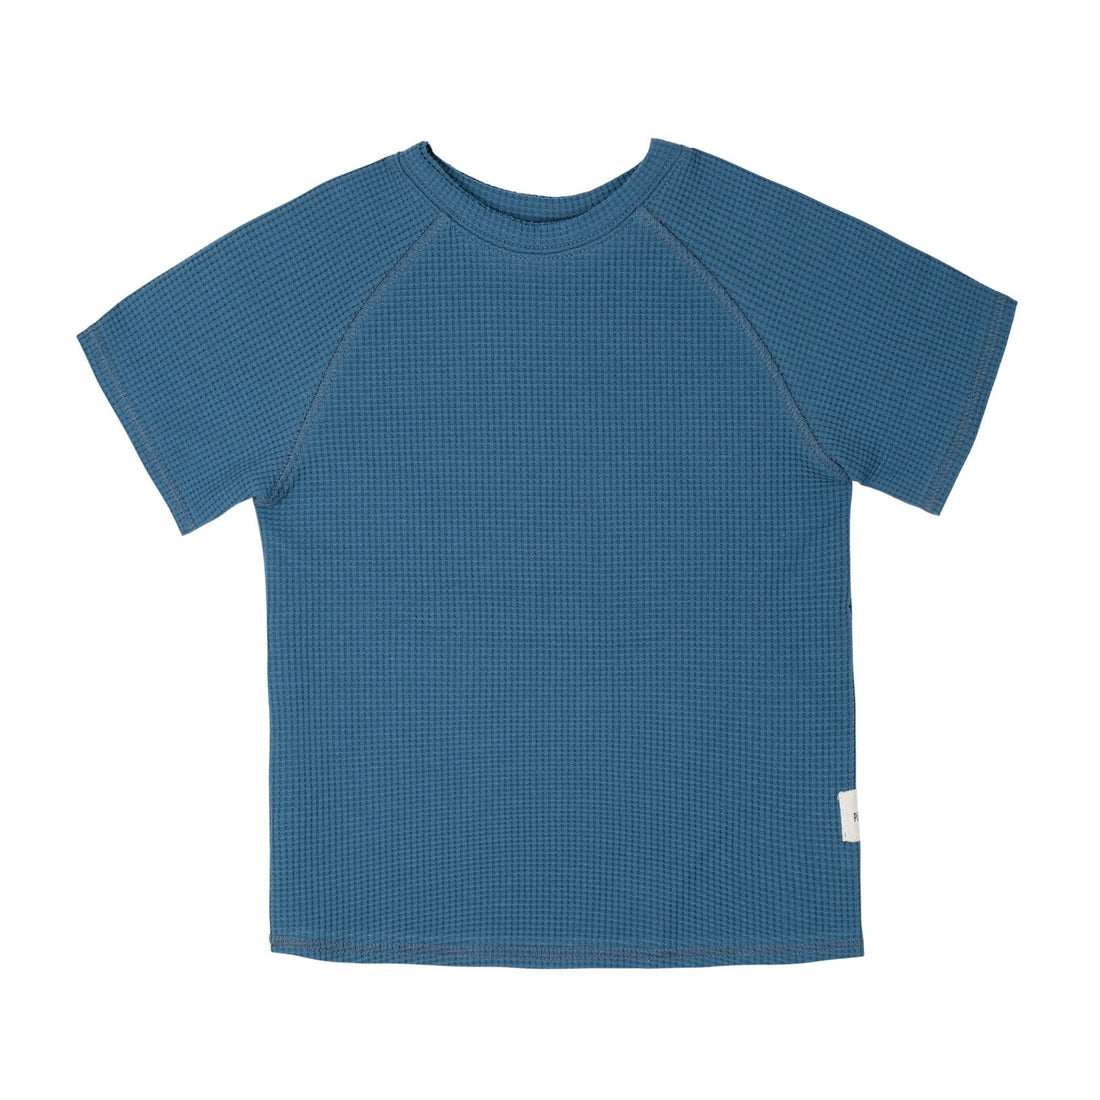 Sommer T-Shirt aus Baumwolle mit Waffle-Muster in blau von Pure Pure für Mädchen und Jungen.